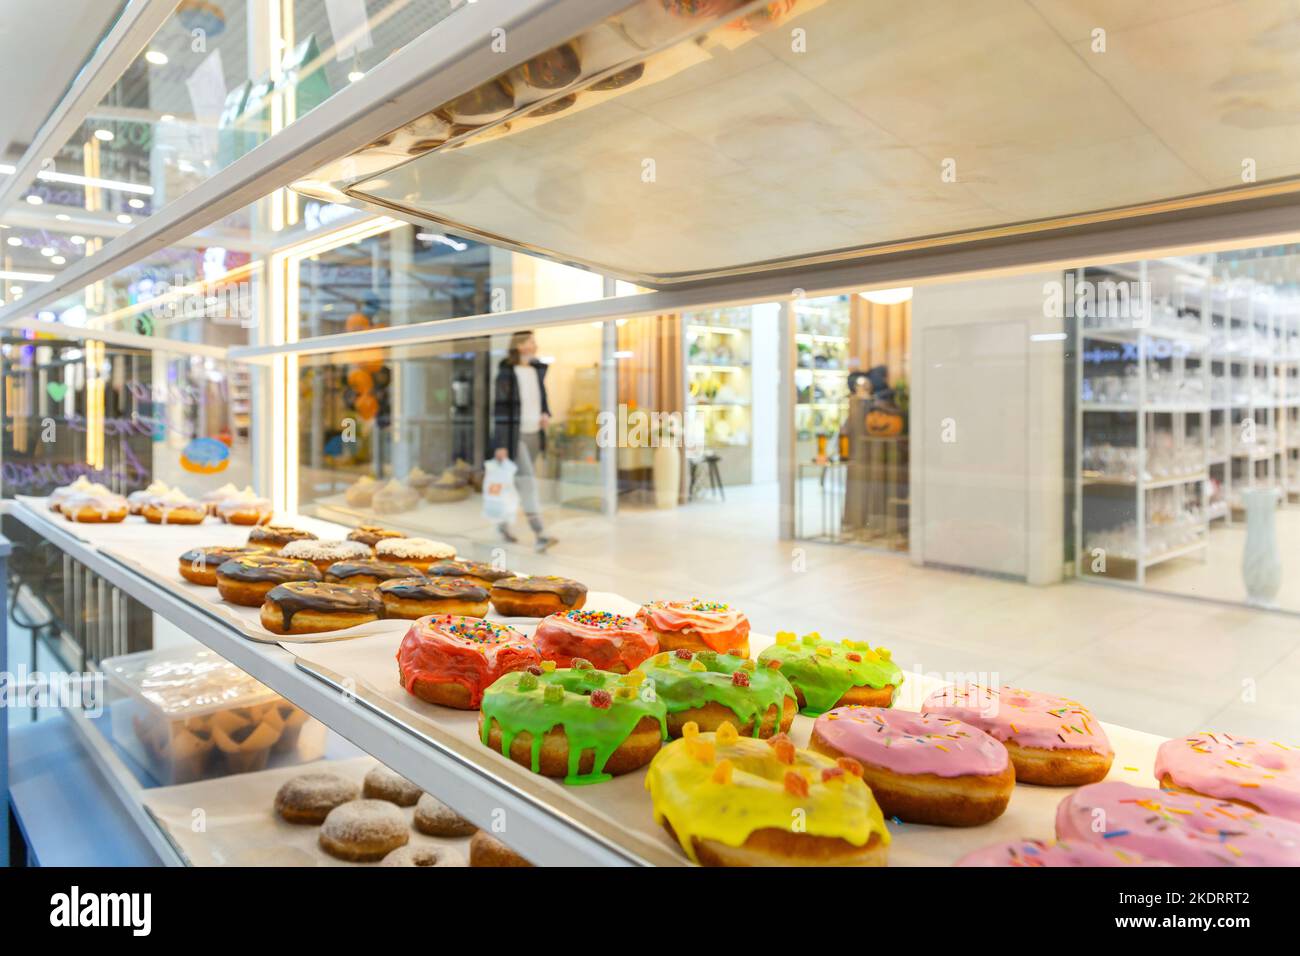 Visualización De Deliciosos Pasteles En Una Panadería Con Donuts Azucarados  , Galletas Y Galletas En Bandejas En Un Mostrador De Tienda Fotos,  retratos, imágenes y fotografía de archivo libres de derecho. Image